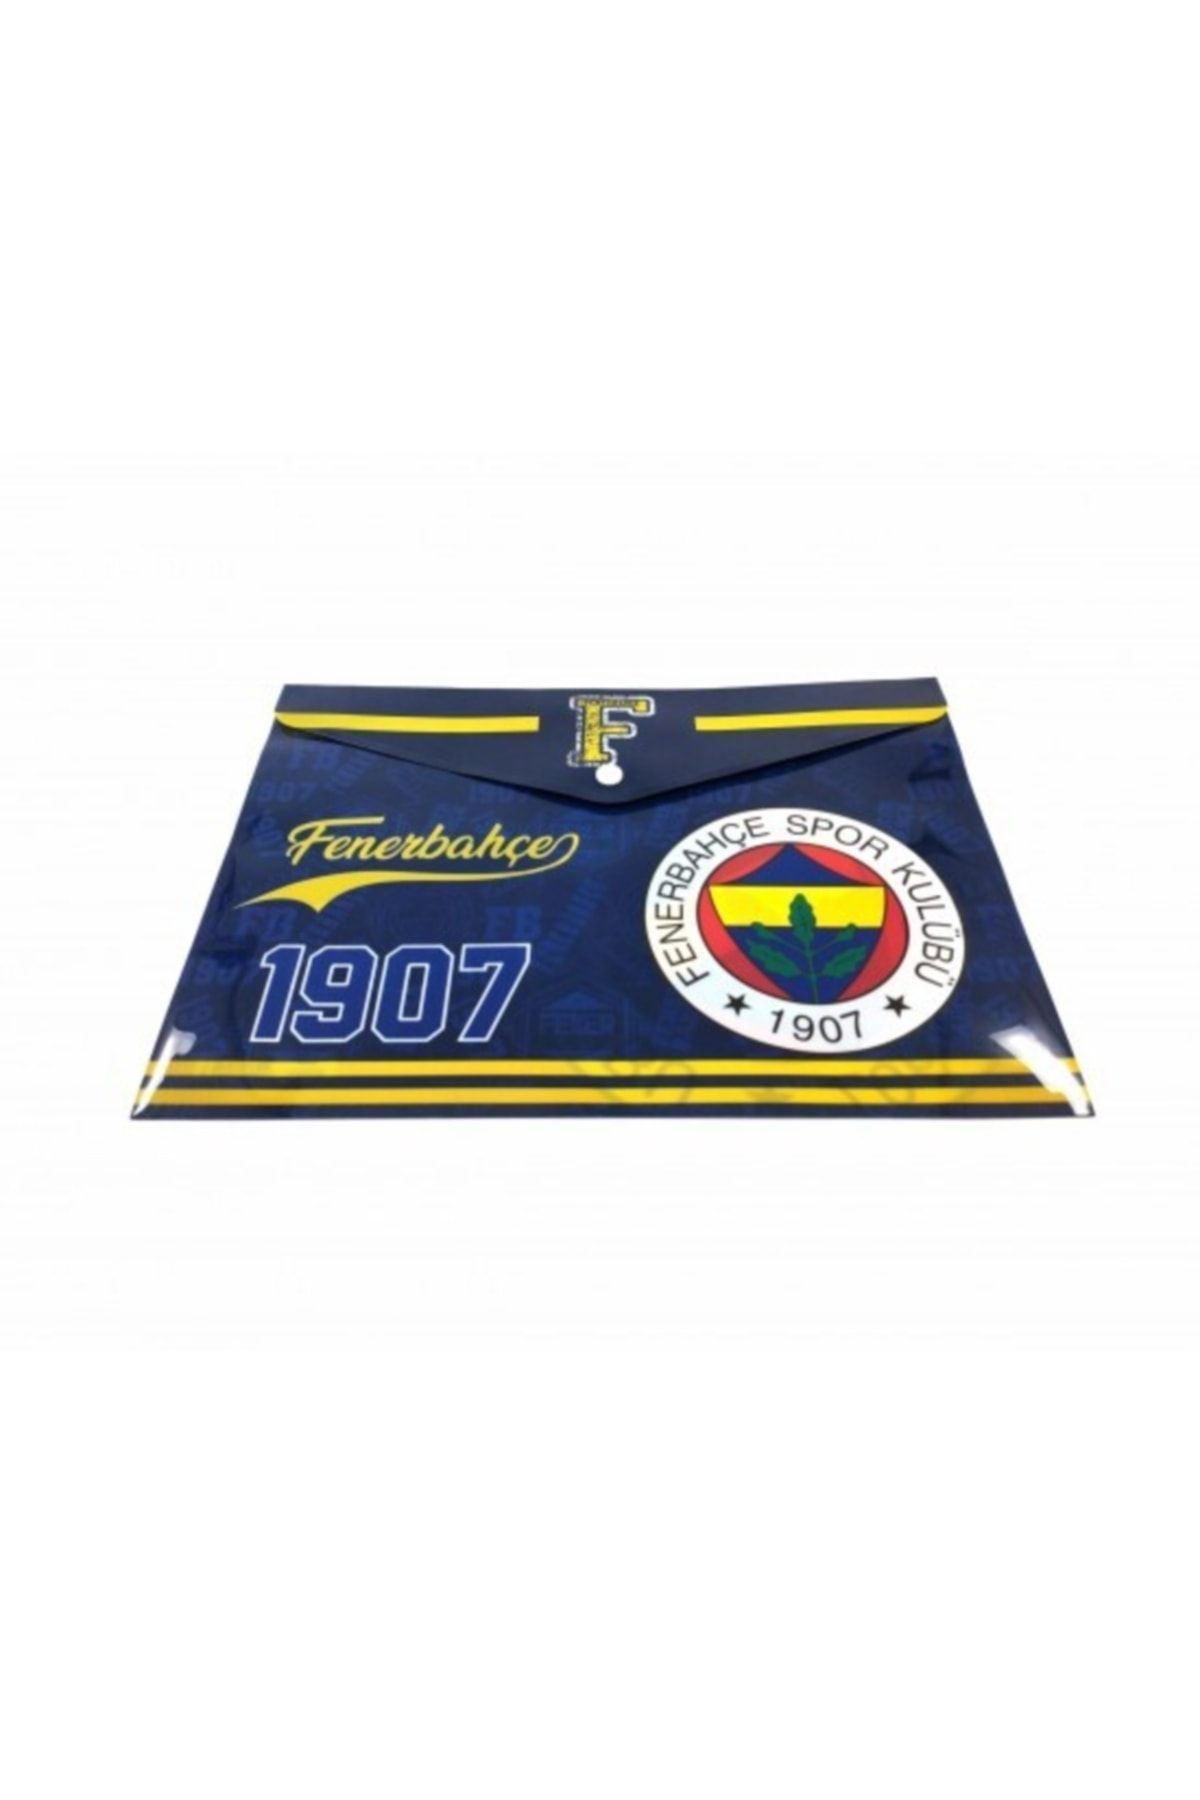 Fenerbahçe A4 Zarf Çıtçıtlı Dosya